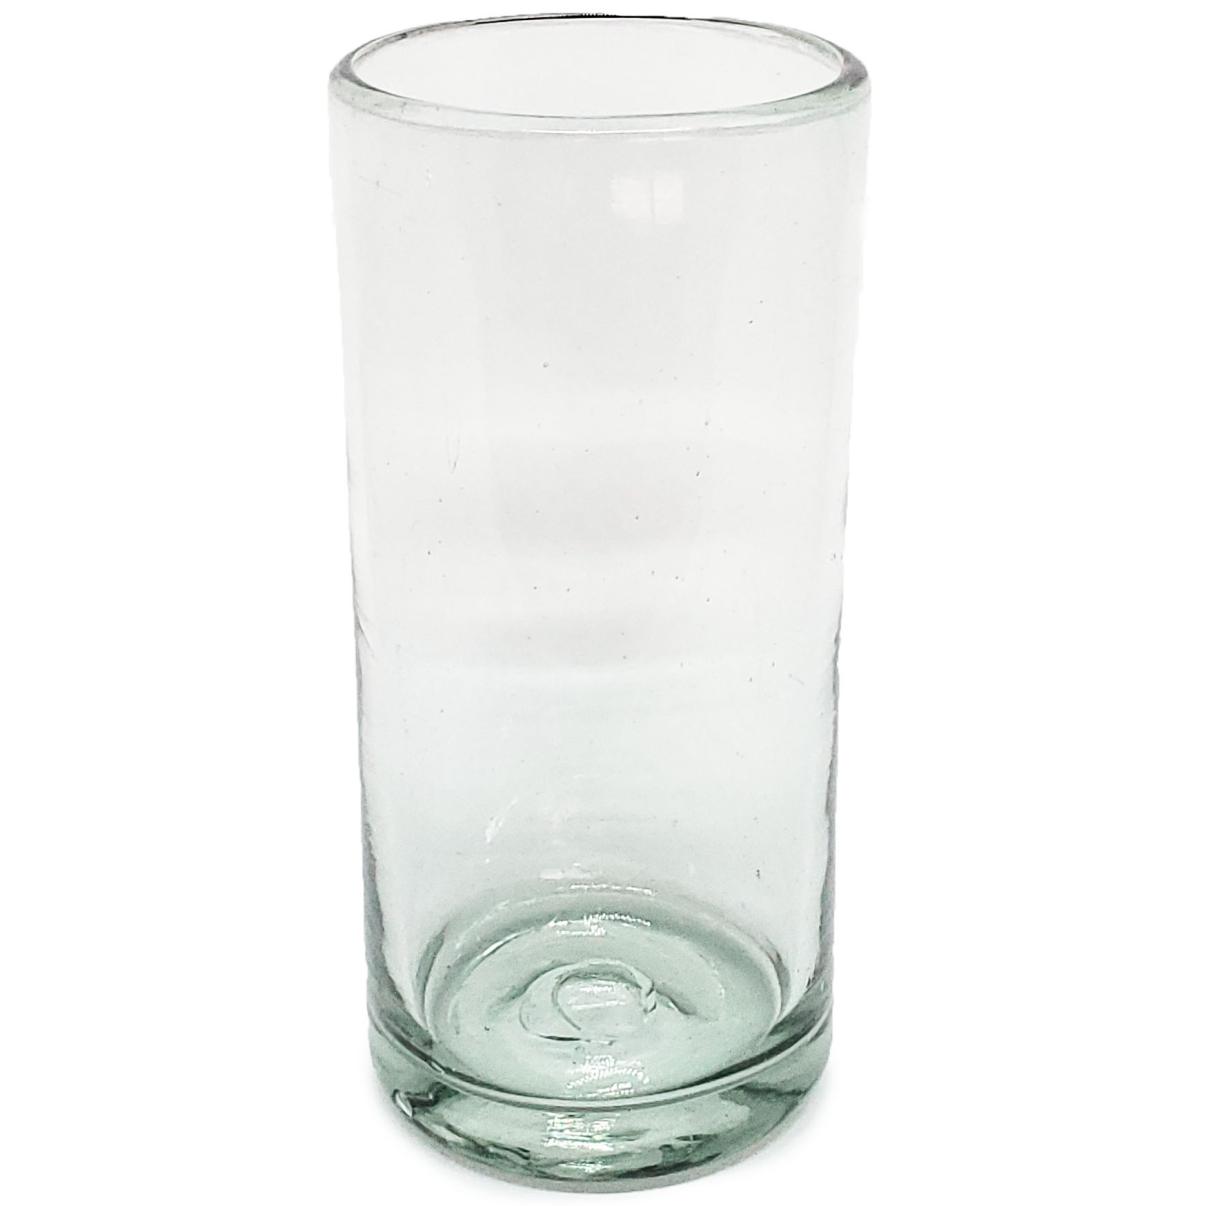 Ofertas / Juego de 6 vasos Jumbo transparentes / ste clsico juego de vasos jumbo est hecho con vidrio reciclado. Contiene pequeas burbujas atrapadas en el vaso.